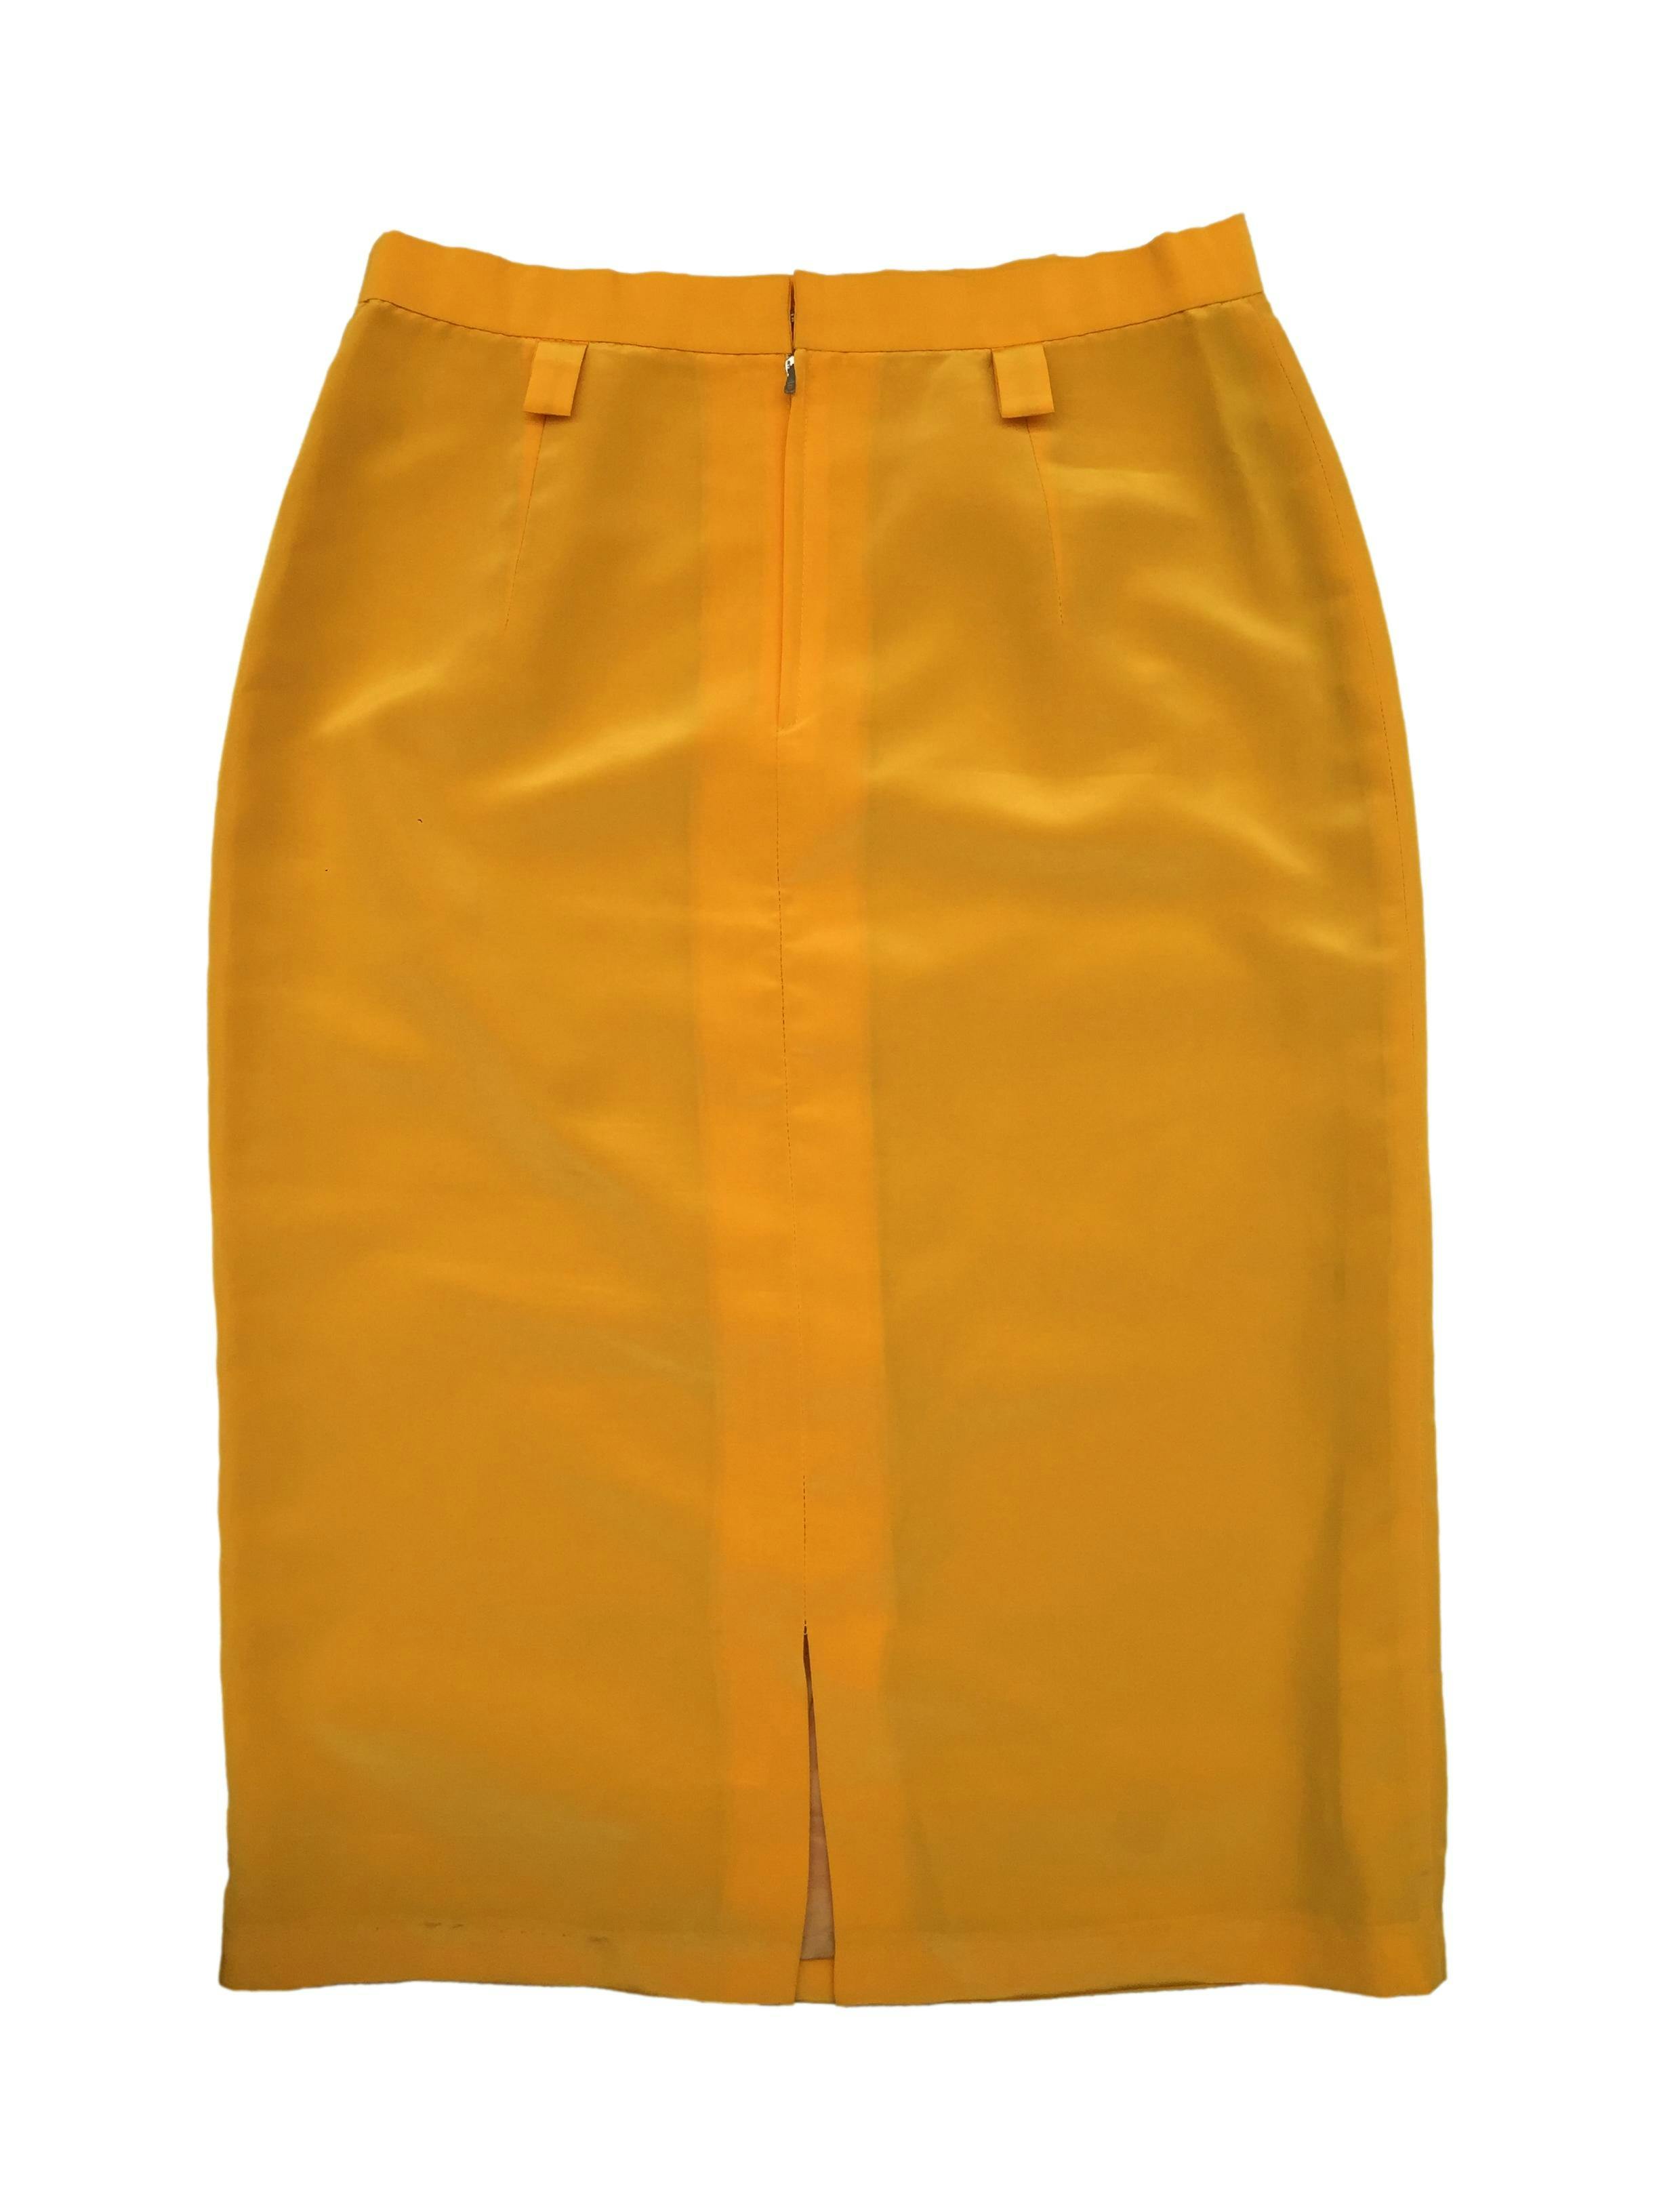 Falda pencil amarilla, con forro interno, pinzas delanteras, espacios para poner correa, cierre y broche posteriores. Cintura: 76cm. Largo: 70cm